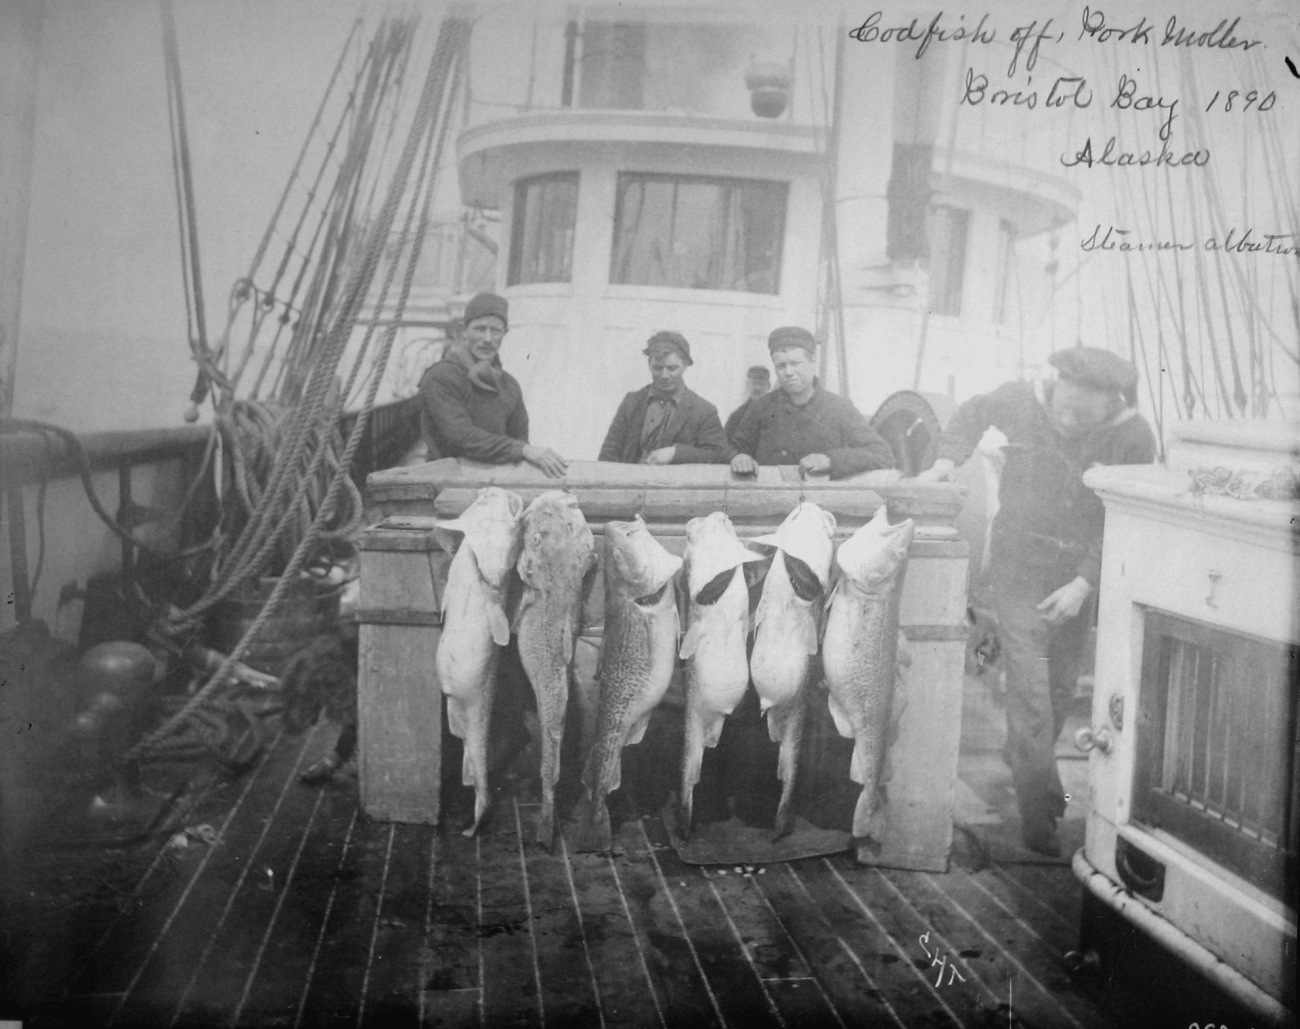 Codfish off Port Moller, Bristol Bay, AK, 1890, steamer Albatross